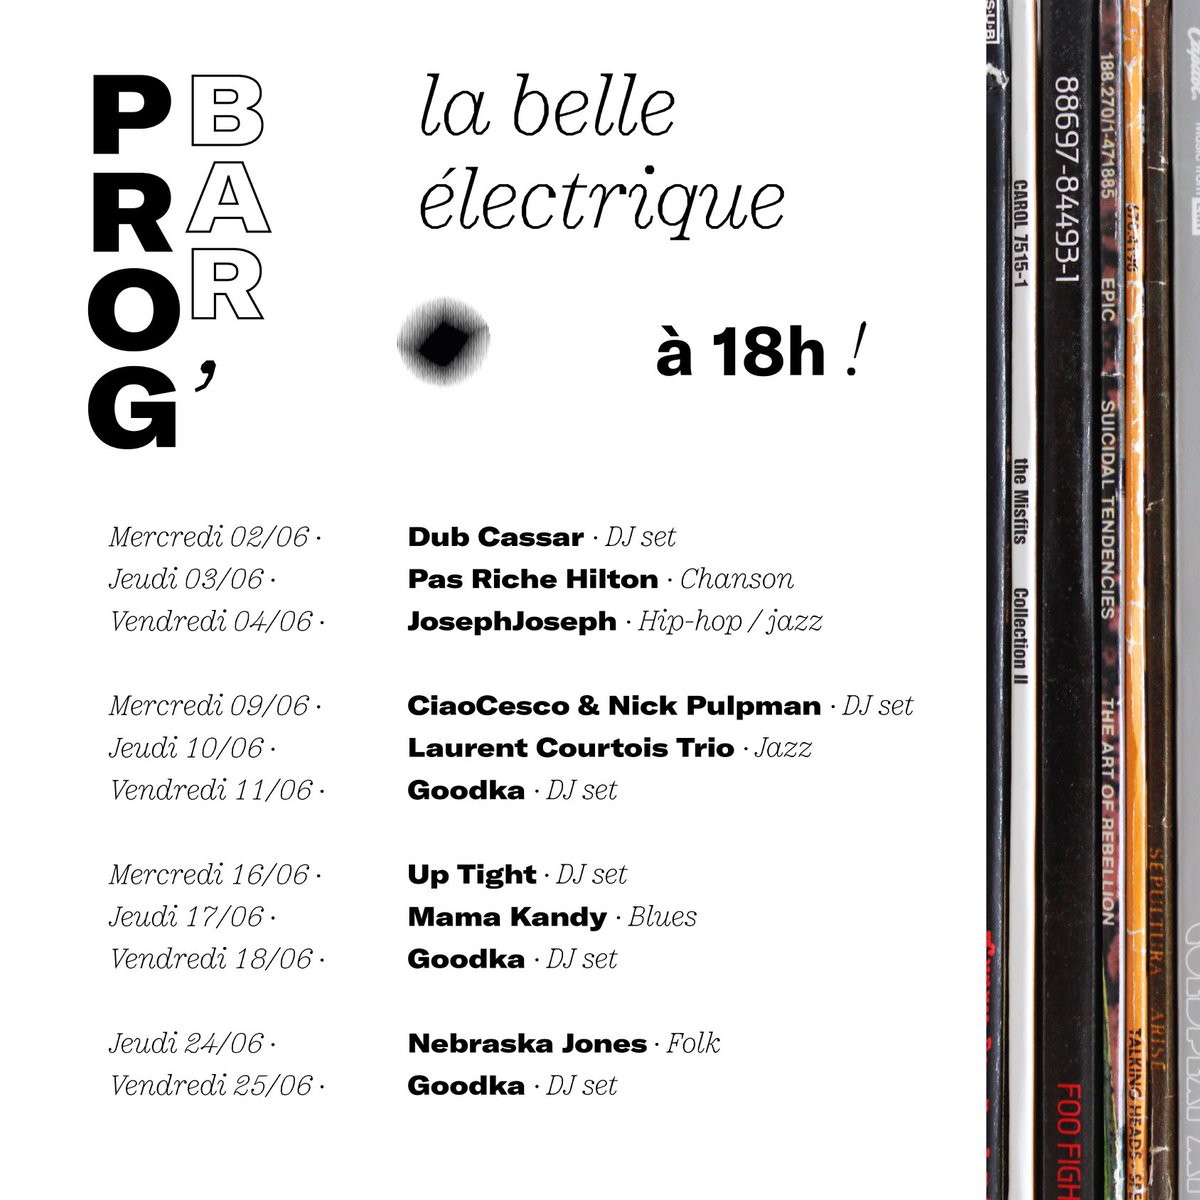 🎵🍹// 𝗣𝗿𝗼𝗴 𝗱𝘂 𝗯𝗮𝗿 : 𝗹𝗮 𝘀𝘂𝗶𝘁𝗲 ! \\ 🍹🎵 . Les concerts en terrasse ça t'a plu ? Tu en veux encore ? . À bon.ne entendeur ou entendeuse : la fermeture du bar passera de 21h à 23h à partir du mercredi 9 juin 😊 . #labelleélectrique #Grenoble #Prog